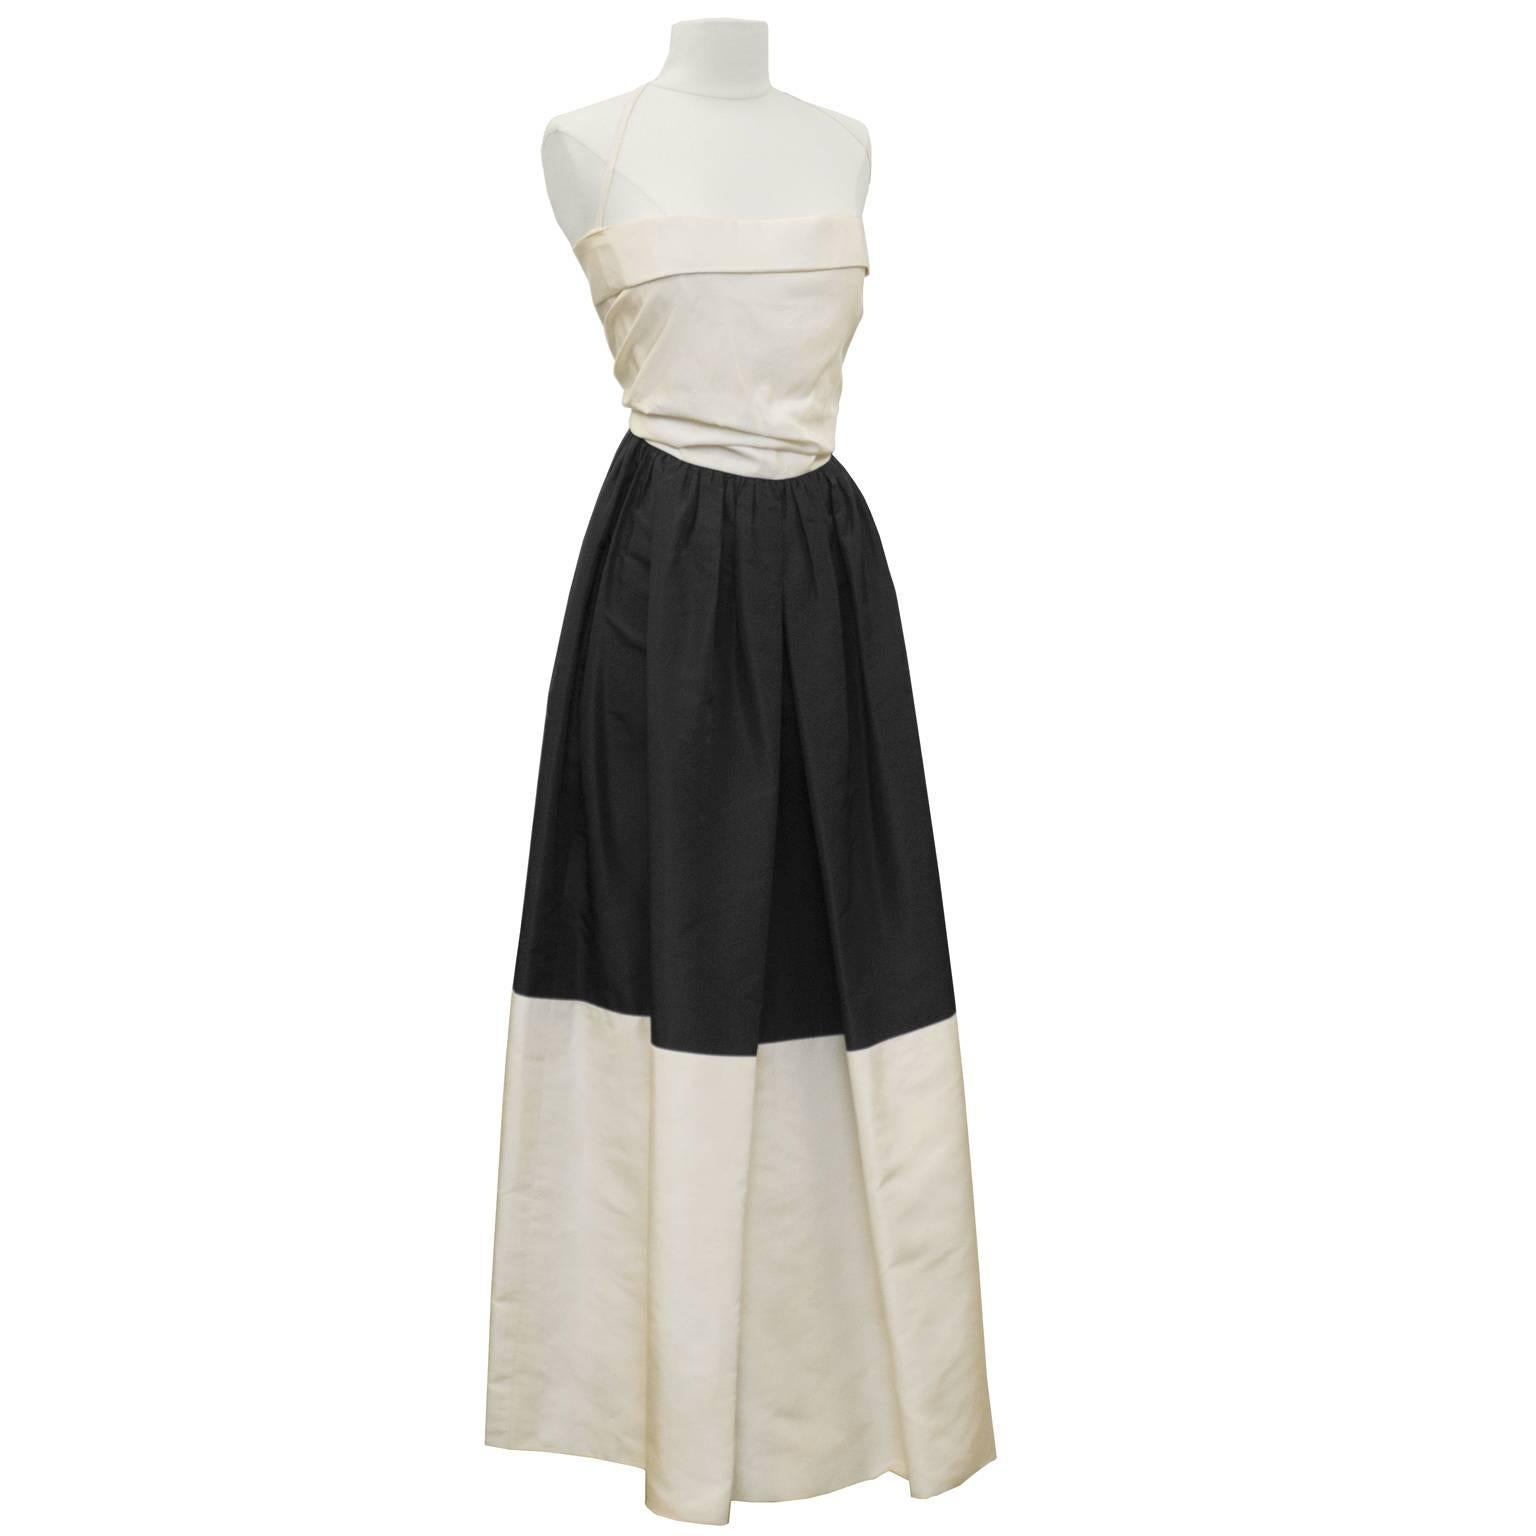 Élégante robe bustier en taffetas de soie noir et crème du début des années 1960, signée Pauline Trigere. La robe est colorée avec un corsage crème, une jupe supérieure noire et un ourlet crème. Le haut du corsage a un pli unique tout autour et une